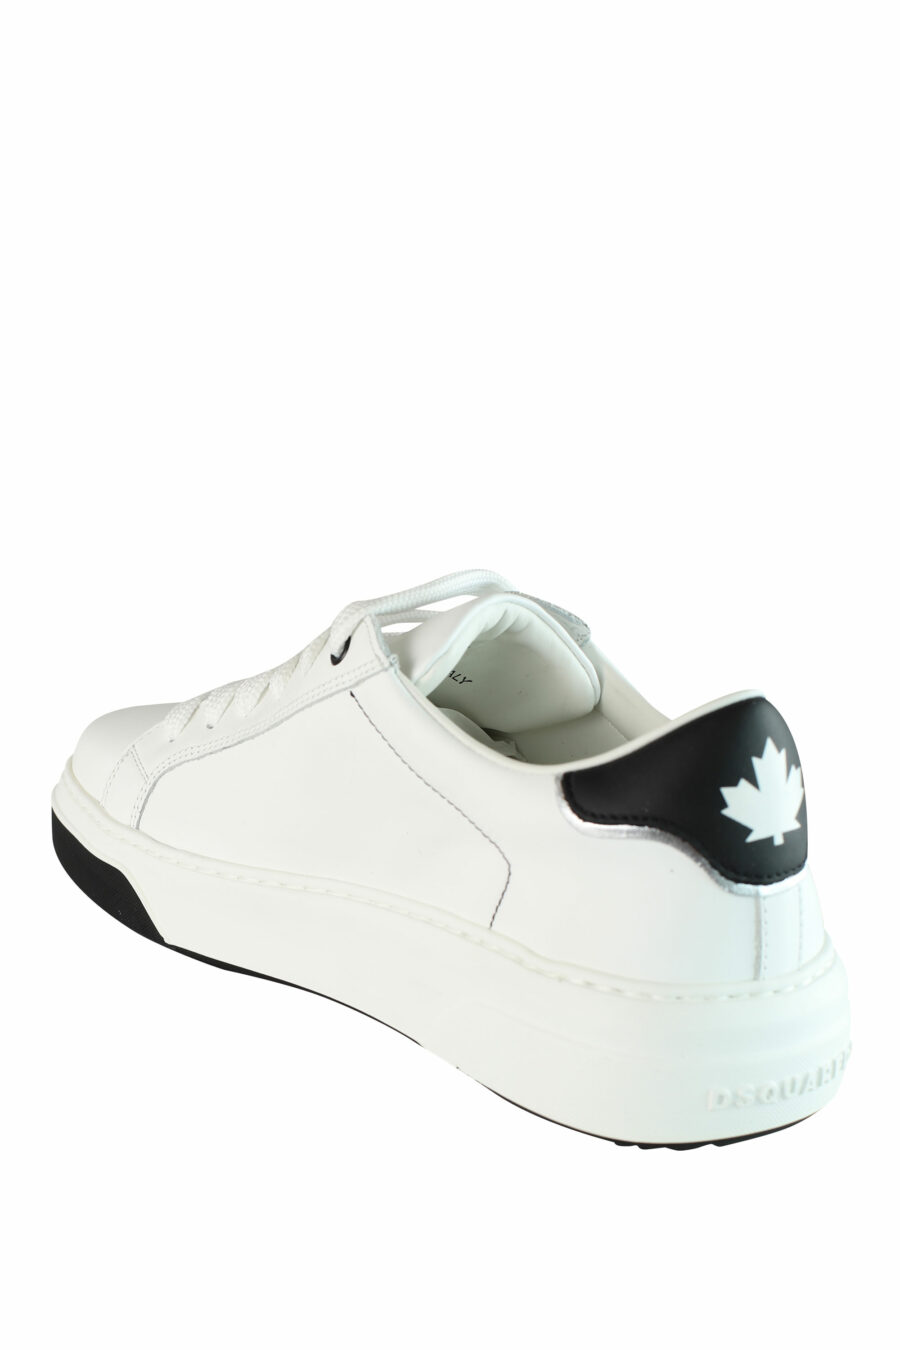 Zapatillas blancas "bumper" con detalles negros y logo - IMG 1428